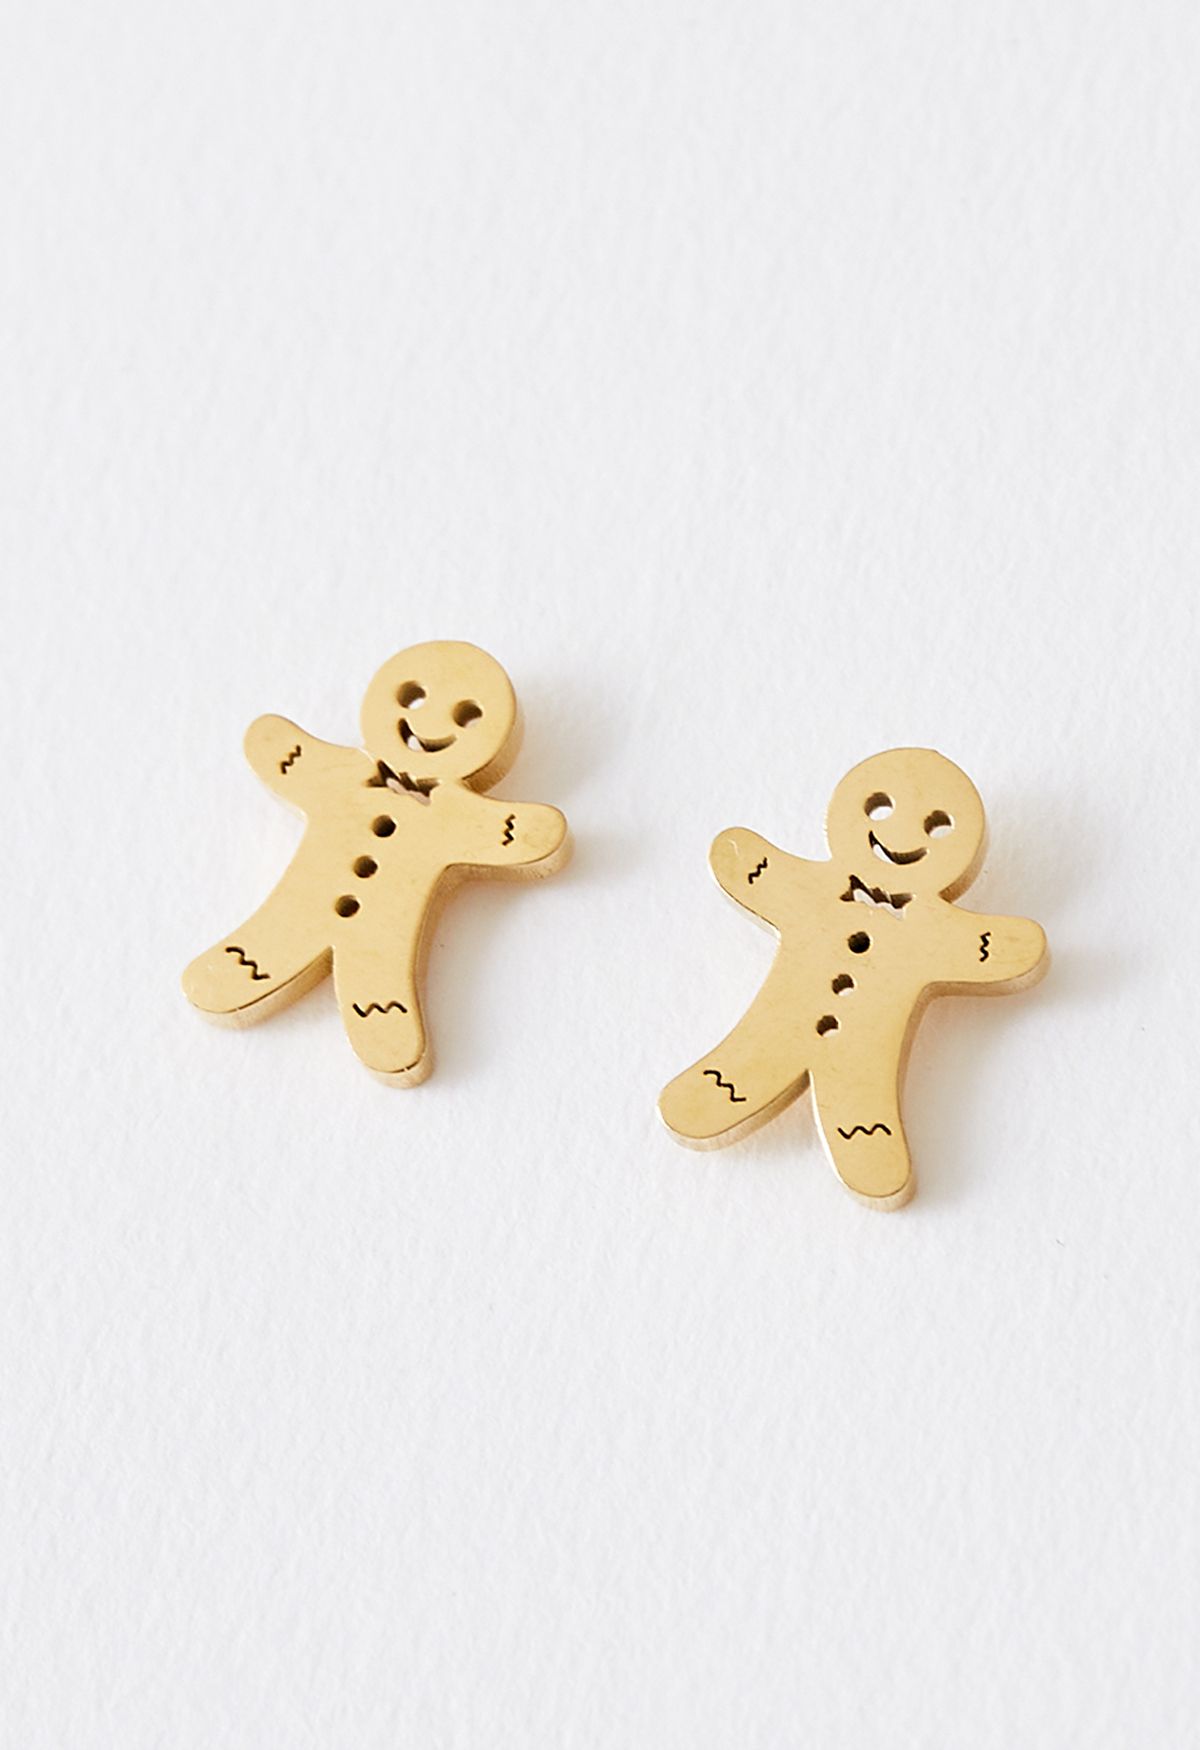 Cute Biscuit Man Earrings in Gold